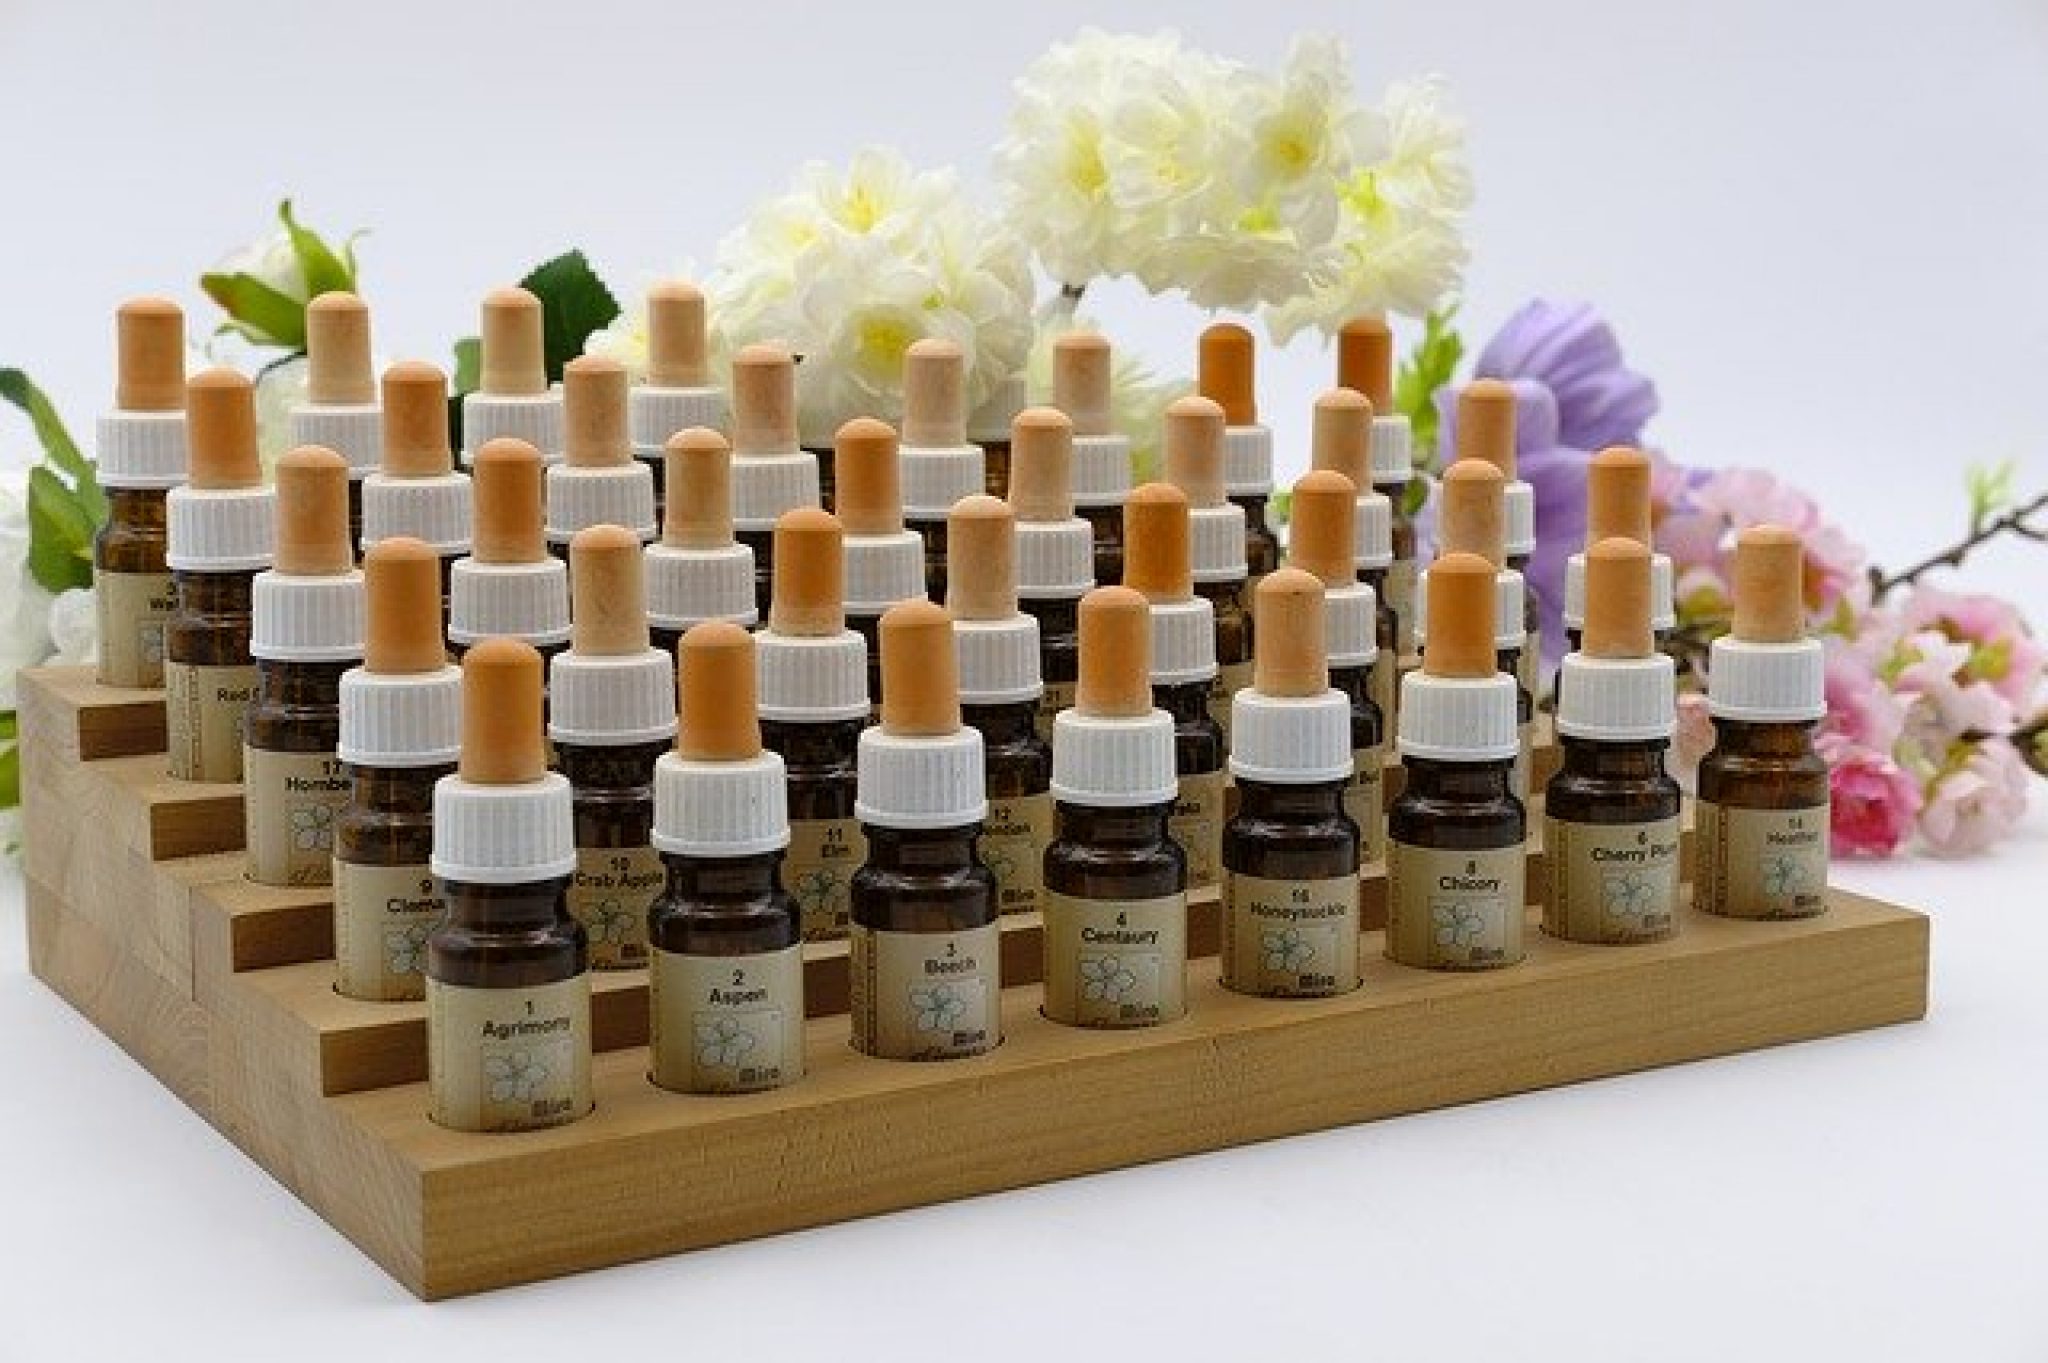 Homeopatische middelen kopen? De veel gebruikte